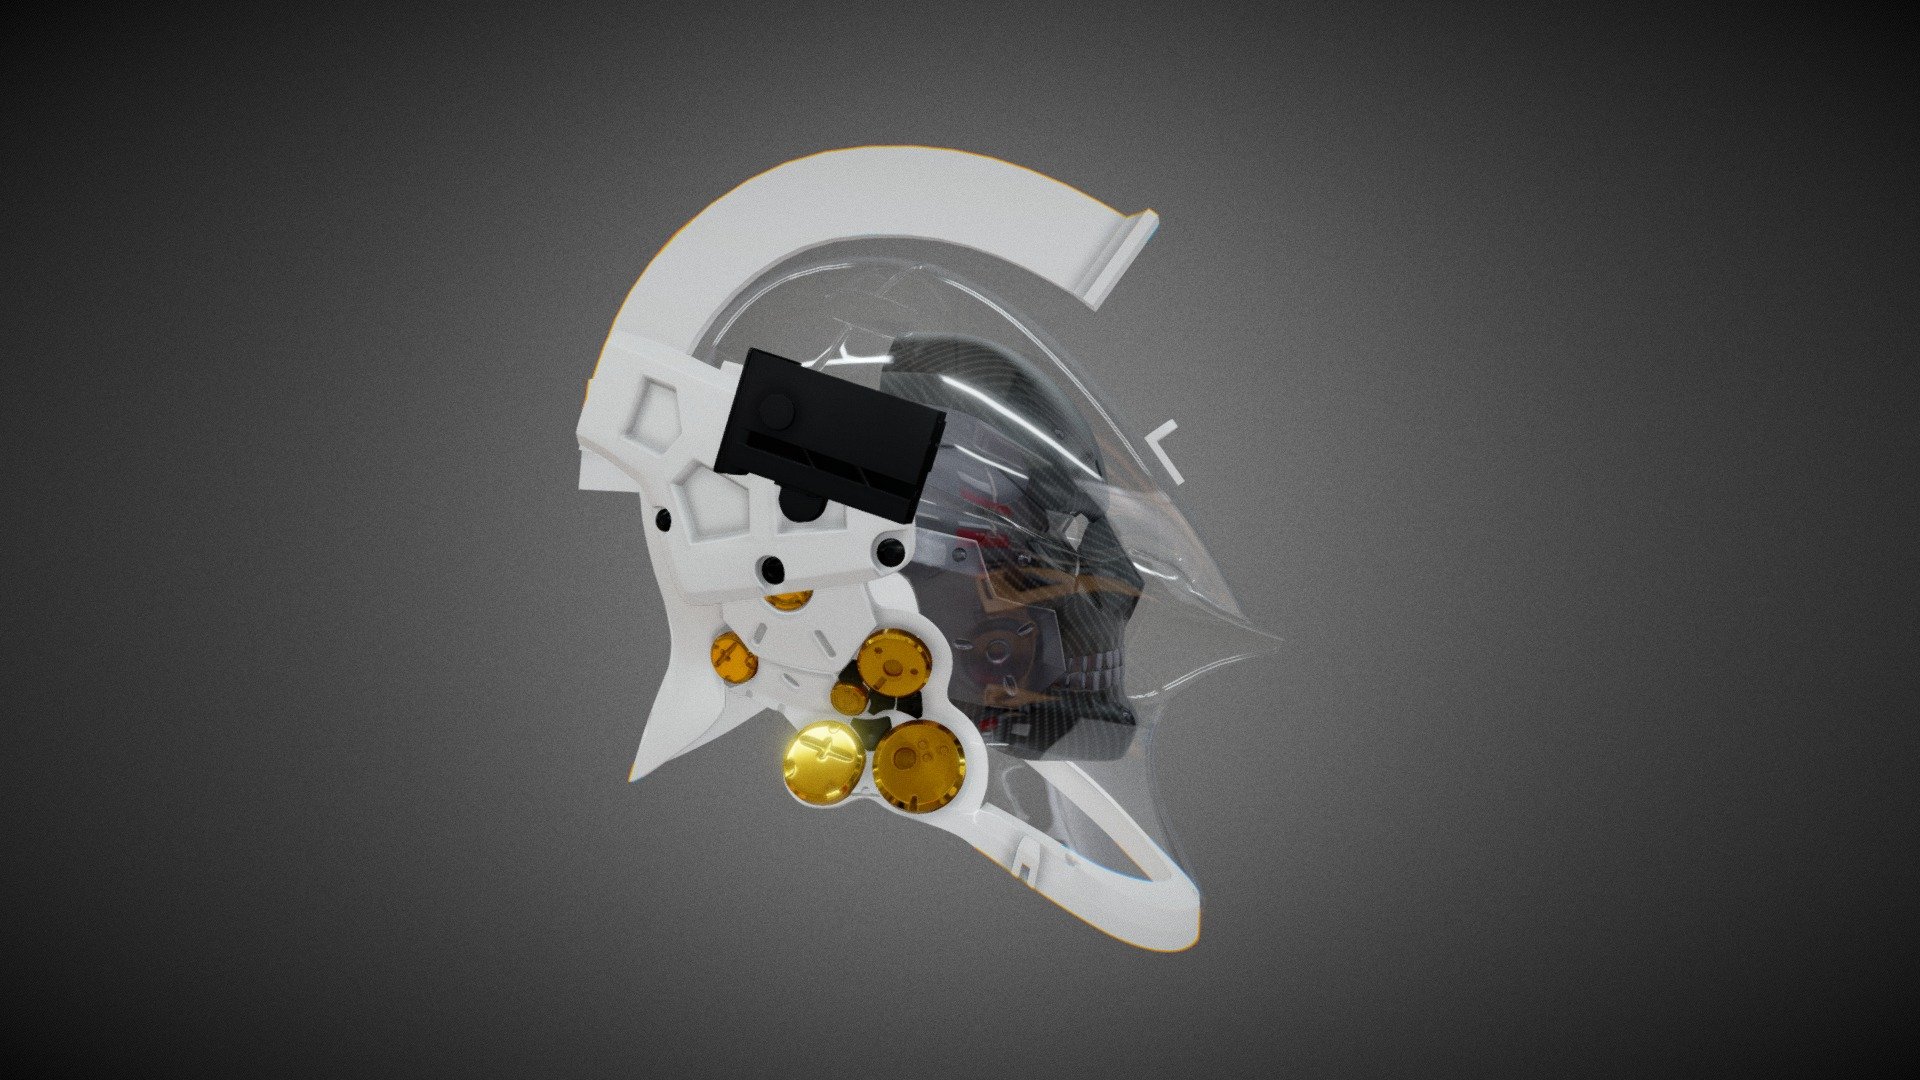 Fan art of Ludens Helmet (Kojima Productions) - Ludens Helmet with Mask Fan Art - 3D model by Egi Setiawan (@giseti) 3d model